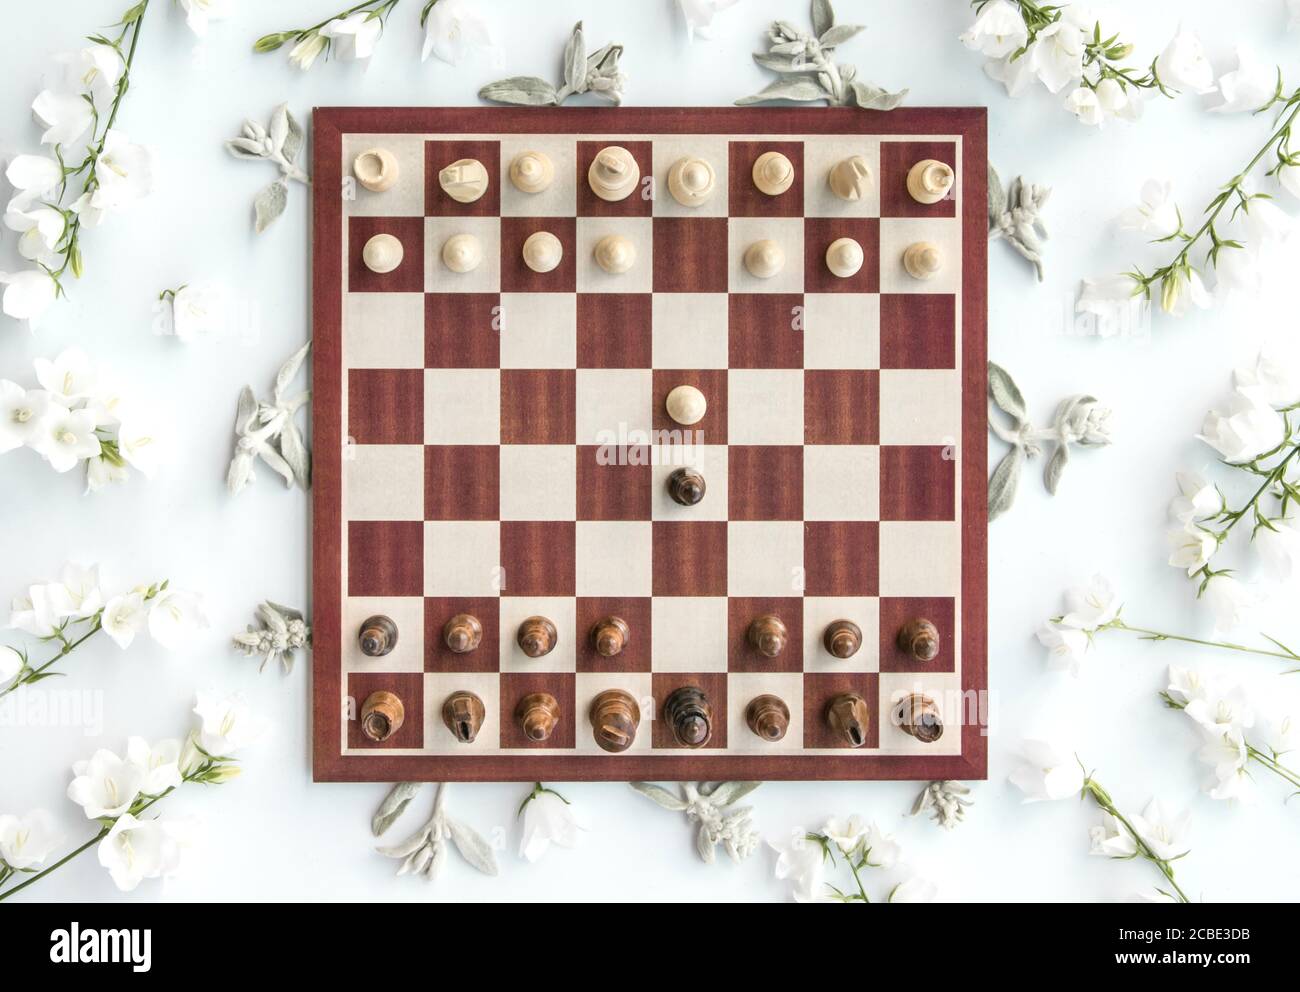 Queen's Gambit - Chess Openings 